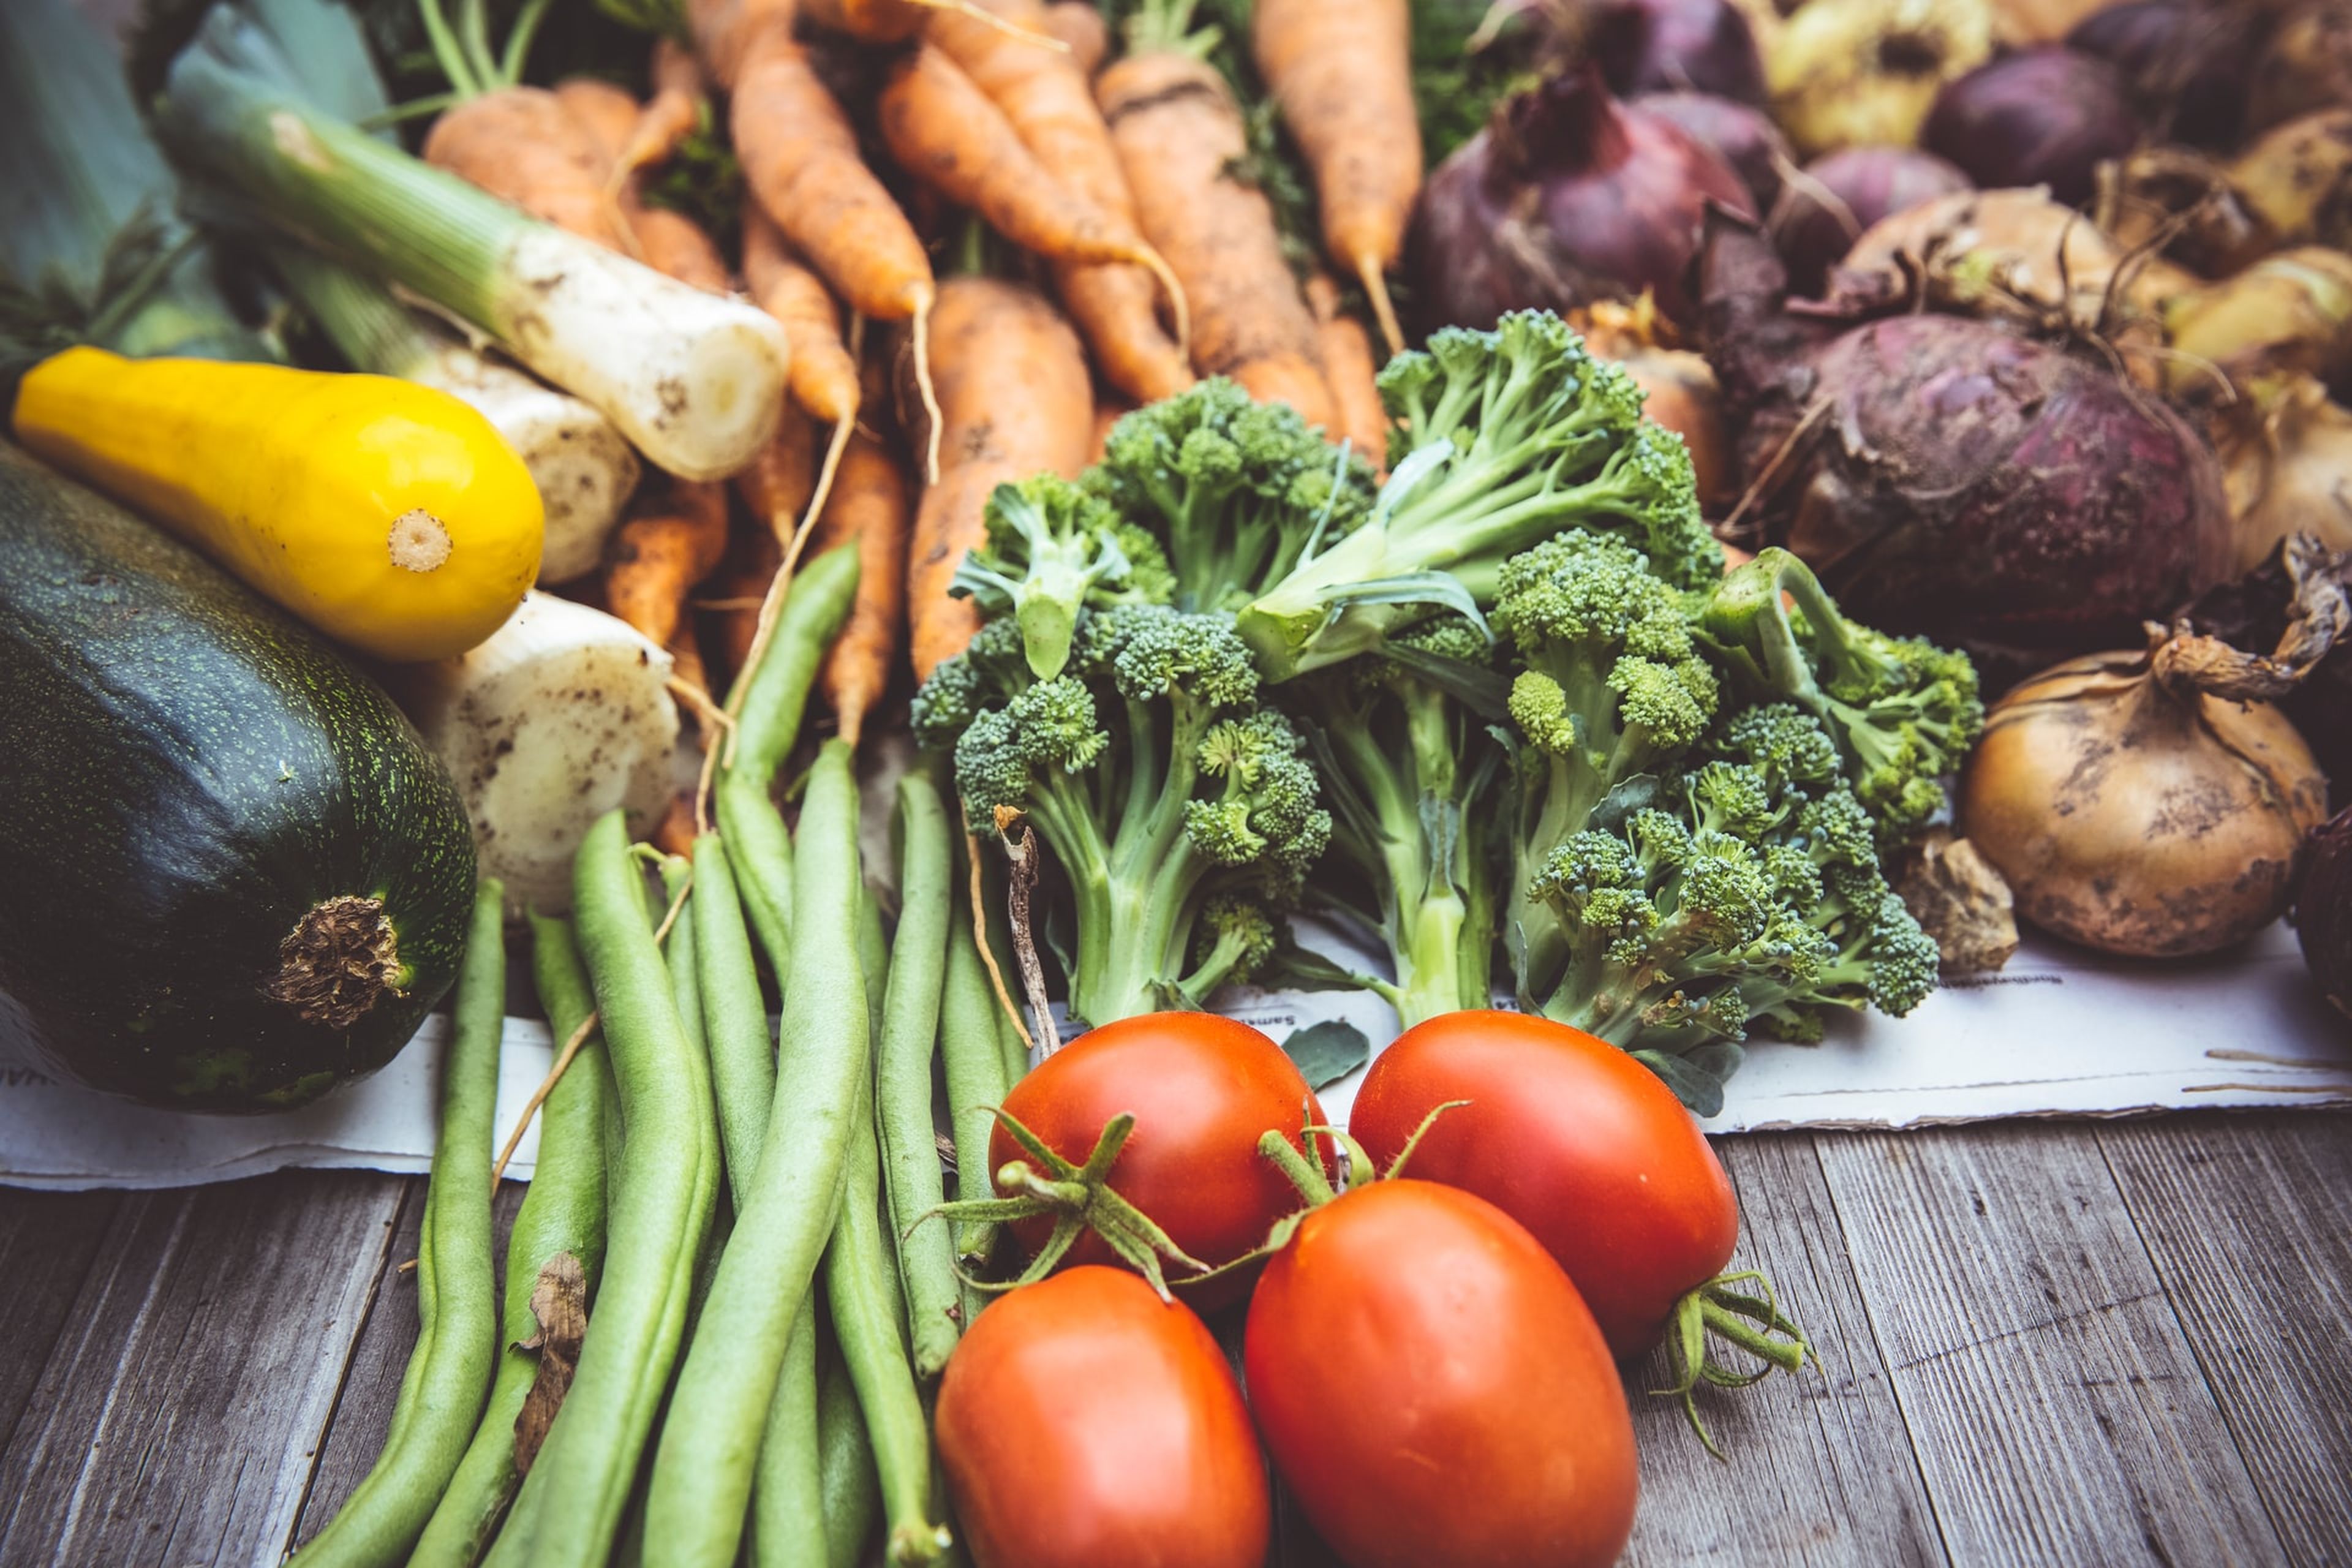 Procura introducir en tu dieta verduras de todos los colores.